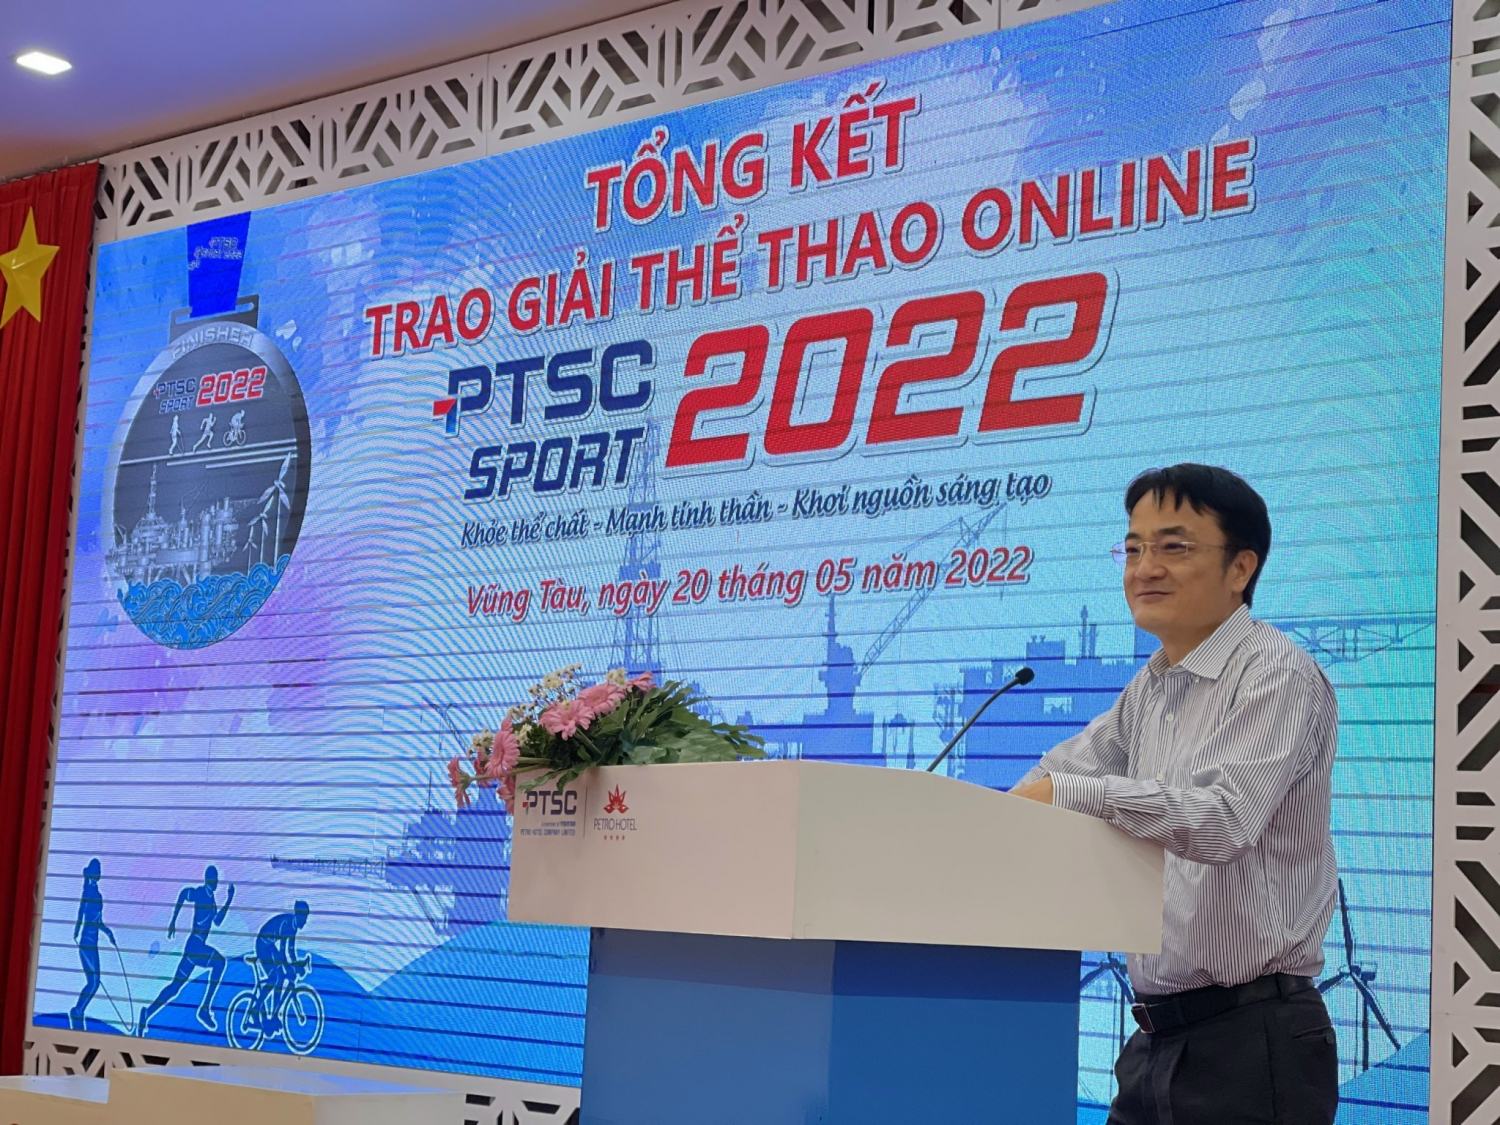 Tổng kết trao giải thể thao online PTSC Sport 2022